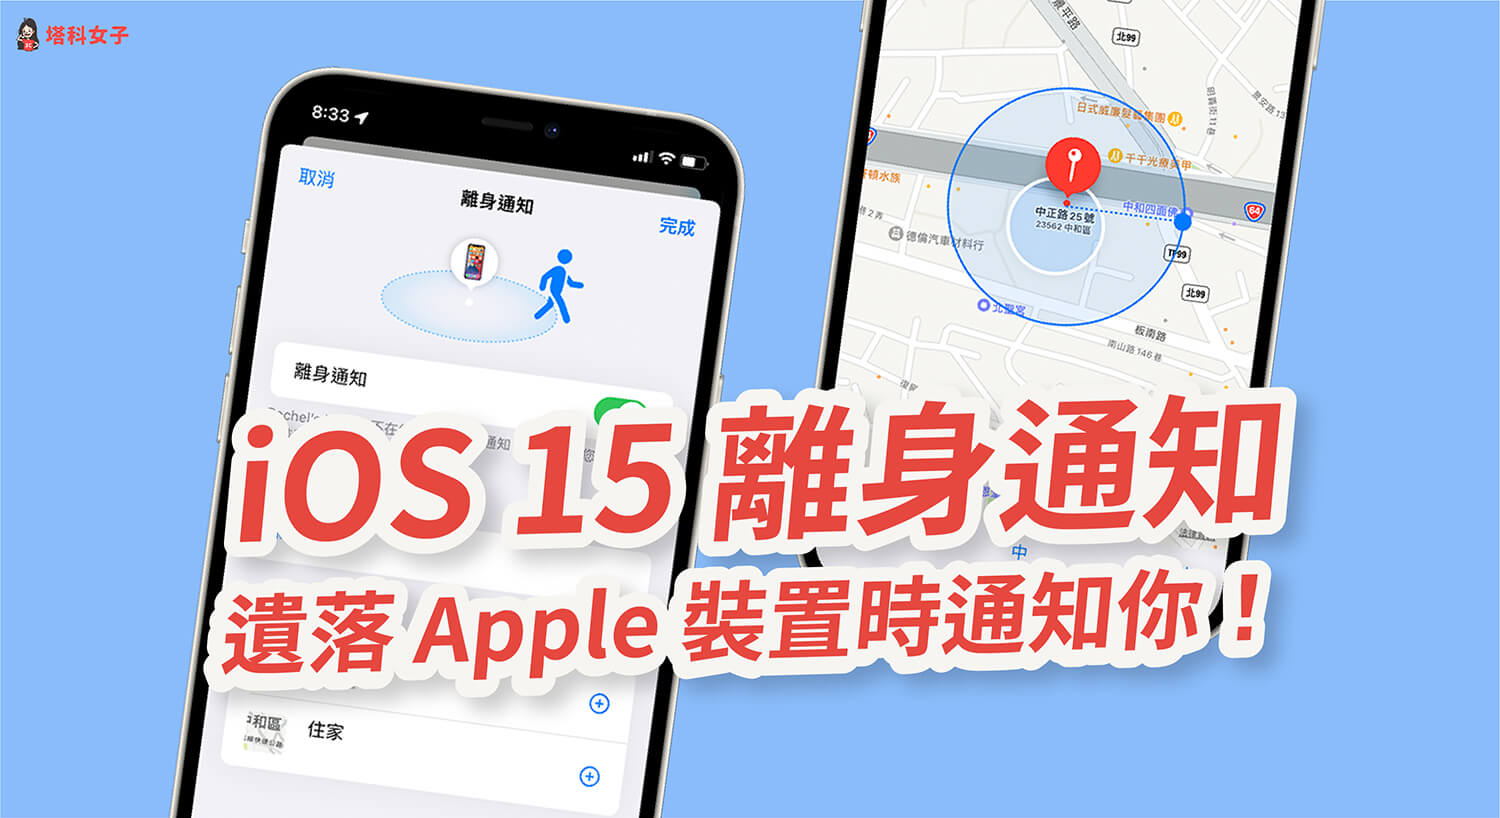 iOS 15 離身通知：Apple 裝置或 AirTag 被遺落時傳送通知提醒！